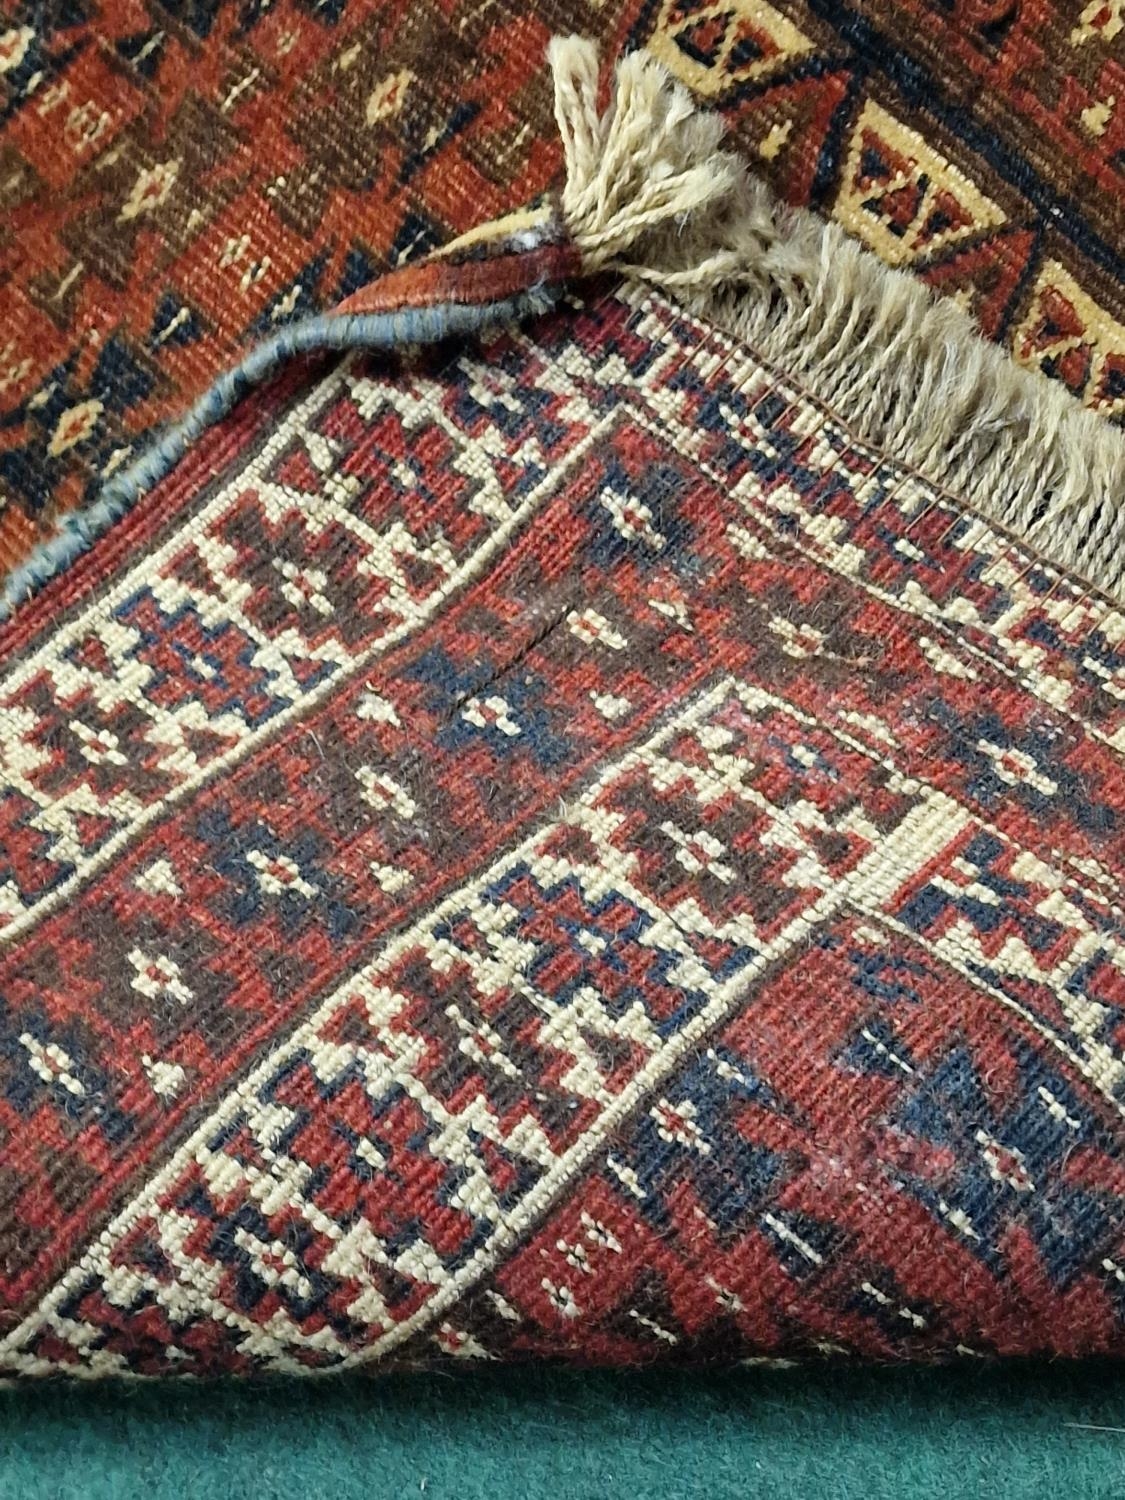 Vintage Yomut Turkmen design rug with Elem panels 190x130cm - Image 4 of 4